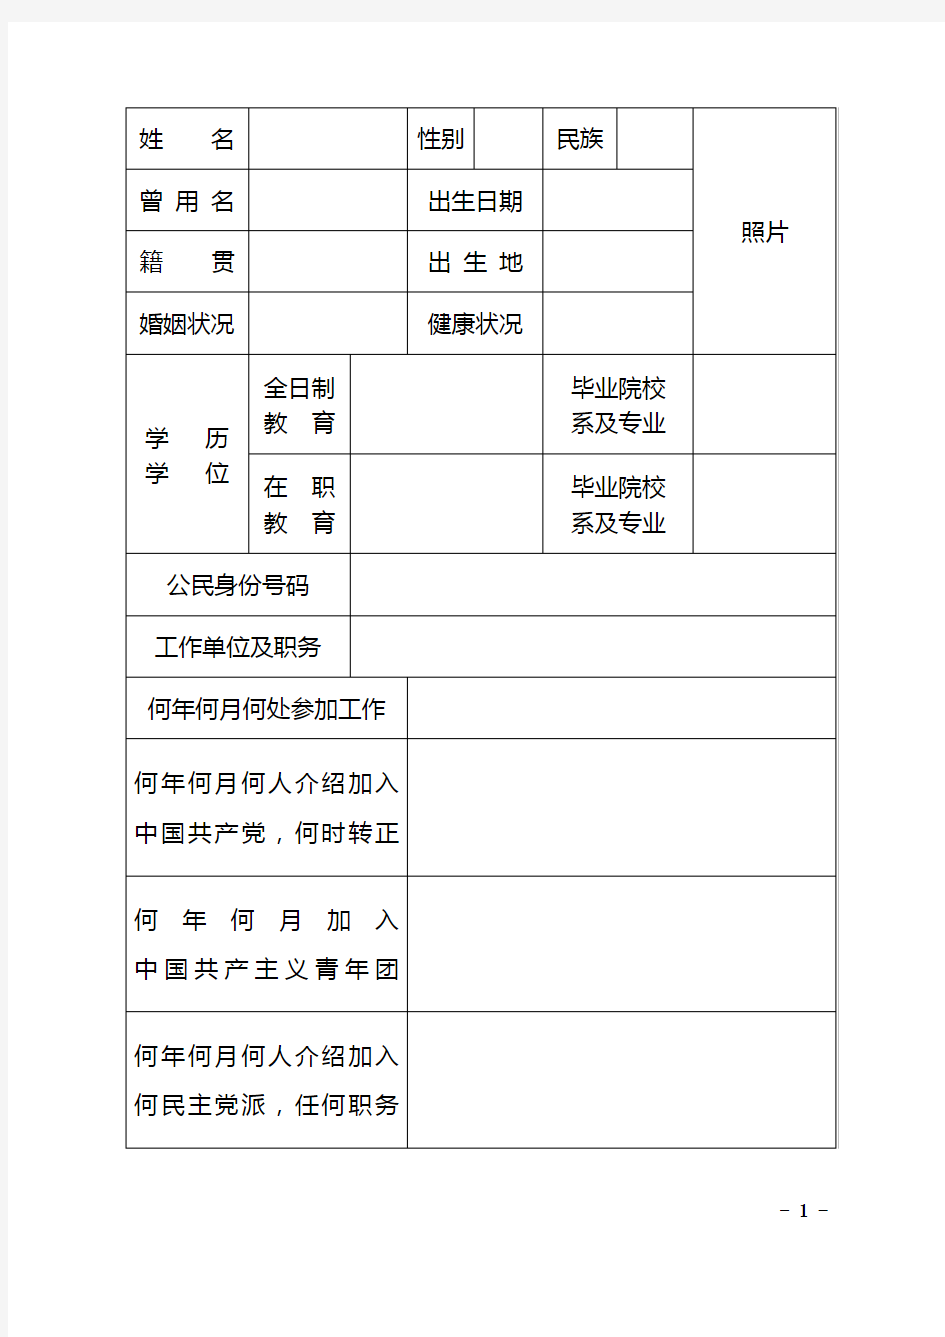 中组部2015年版干部履历表